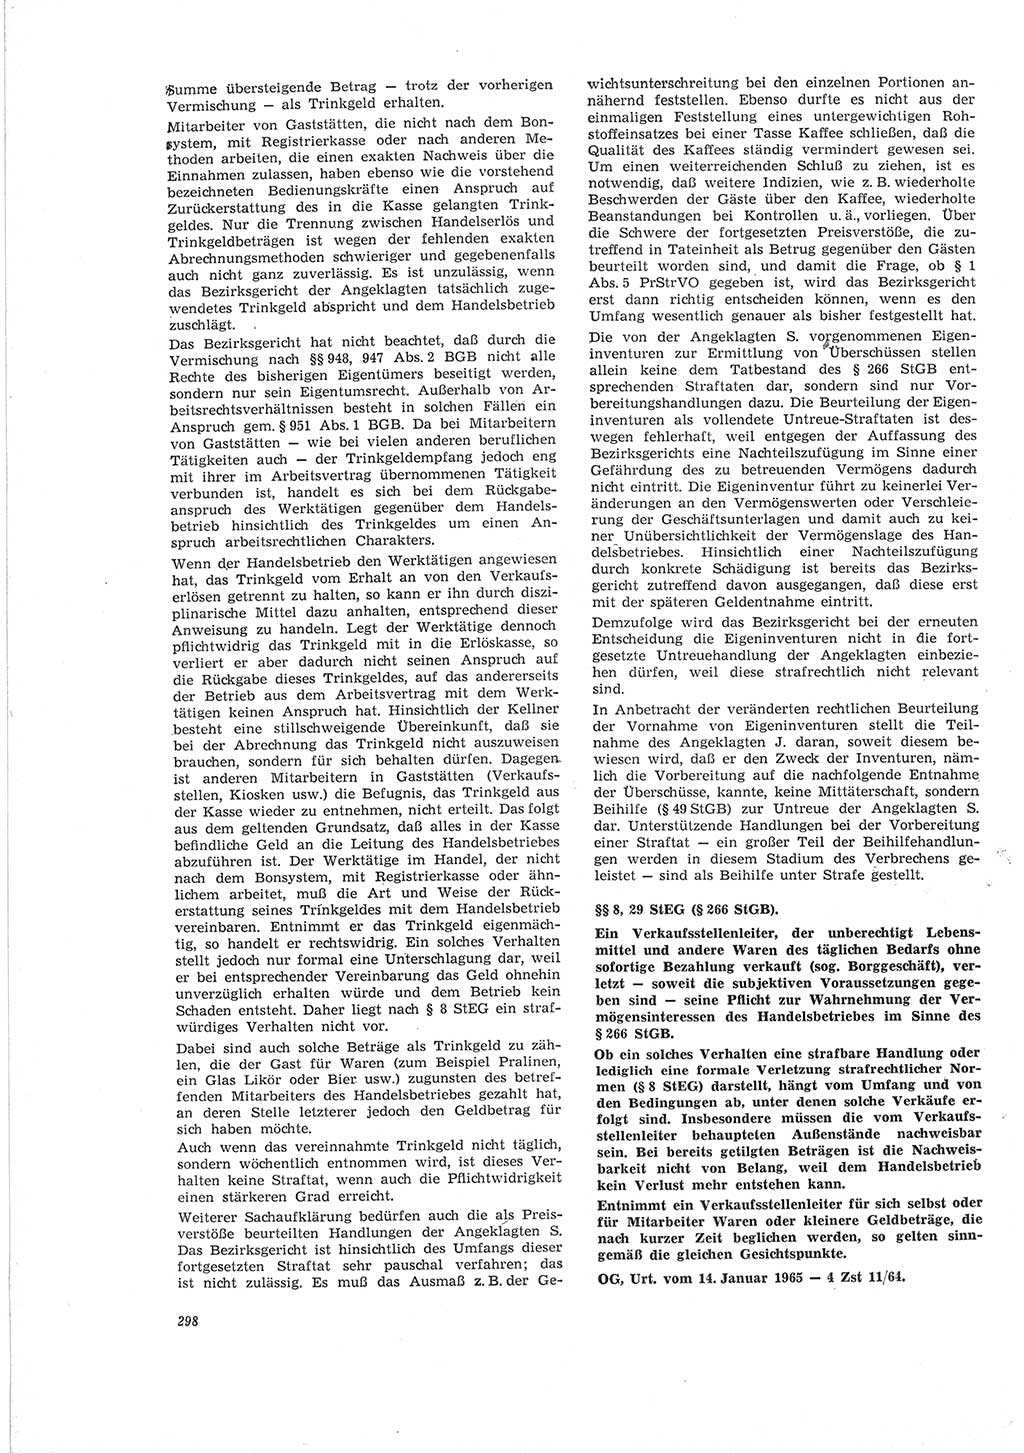 Neue Justiz (NJ), Zeitschrift für Recht und Rechtswissenschaft [Deutsche Demokratische Republik (DDR)], 19. Jahrgang 1965, Seite 298 (NJ DDR 1965, S. 298)